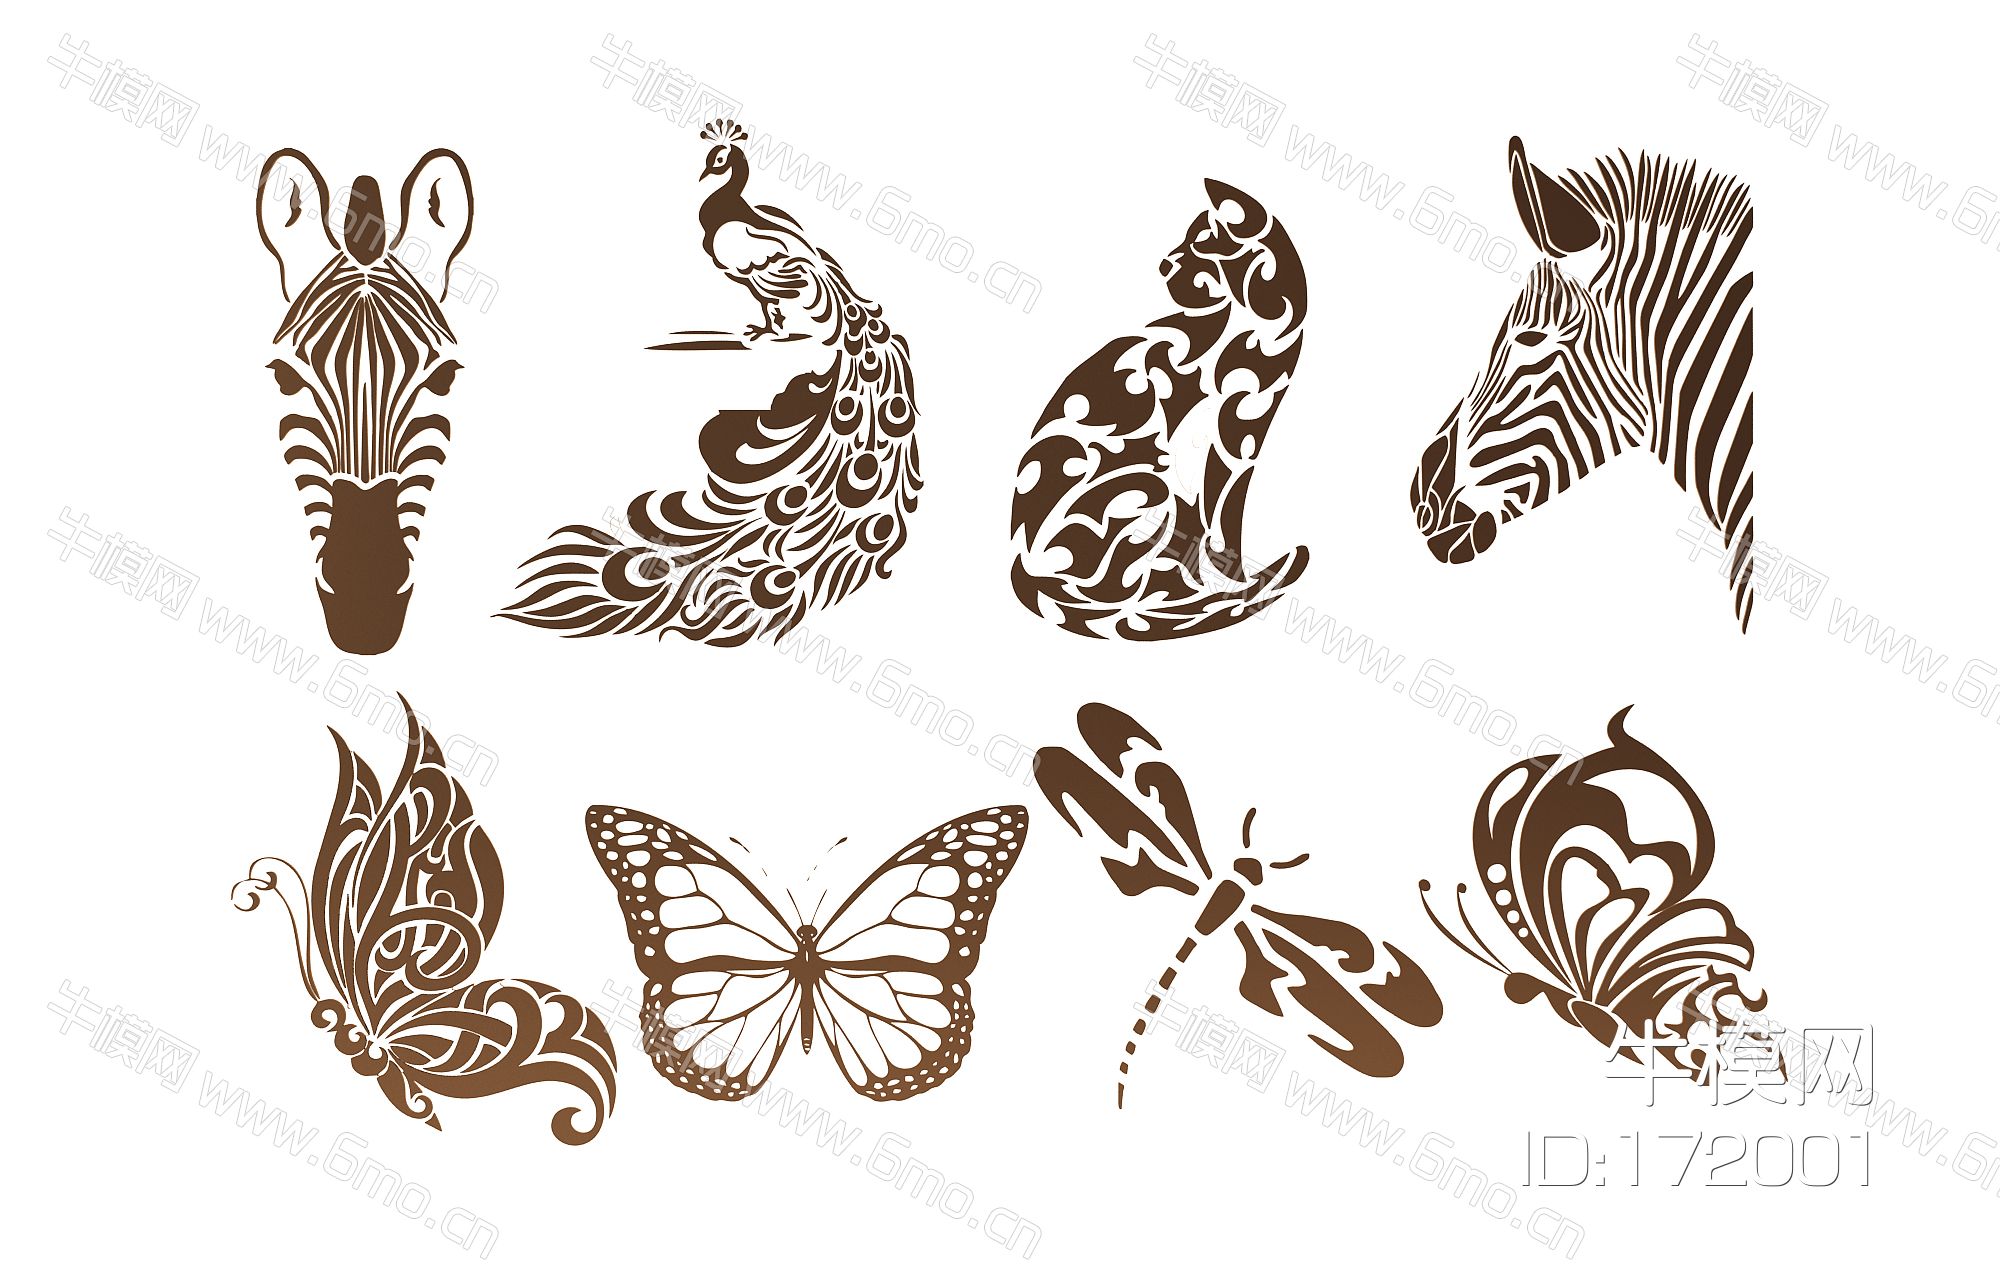 现代蝴蝶猫孔雀斑马头蜻蜓剪影图案墙饰